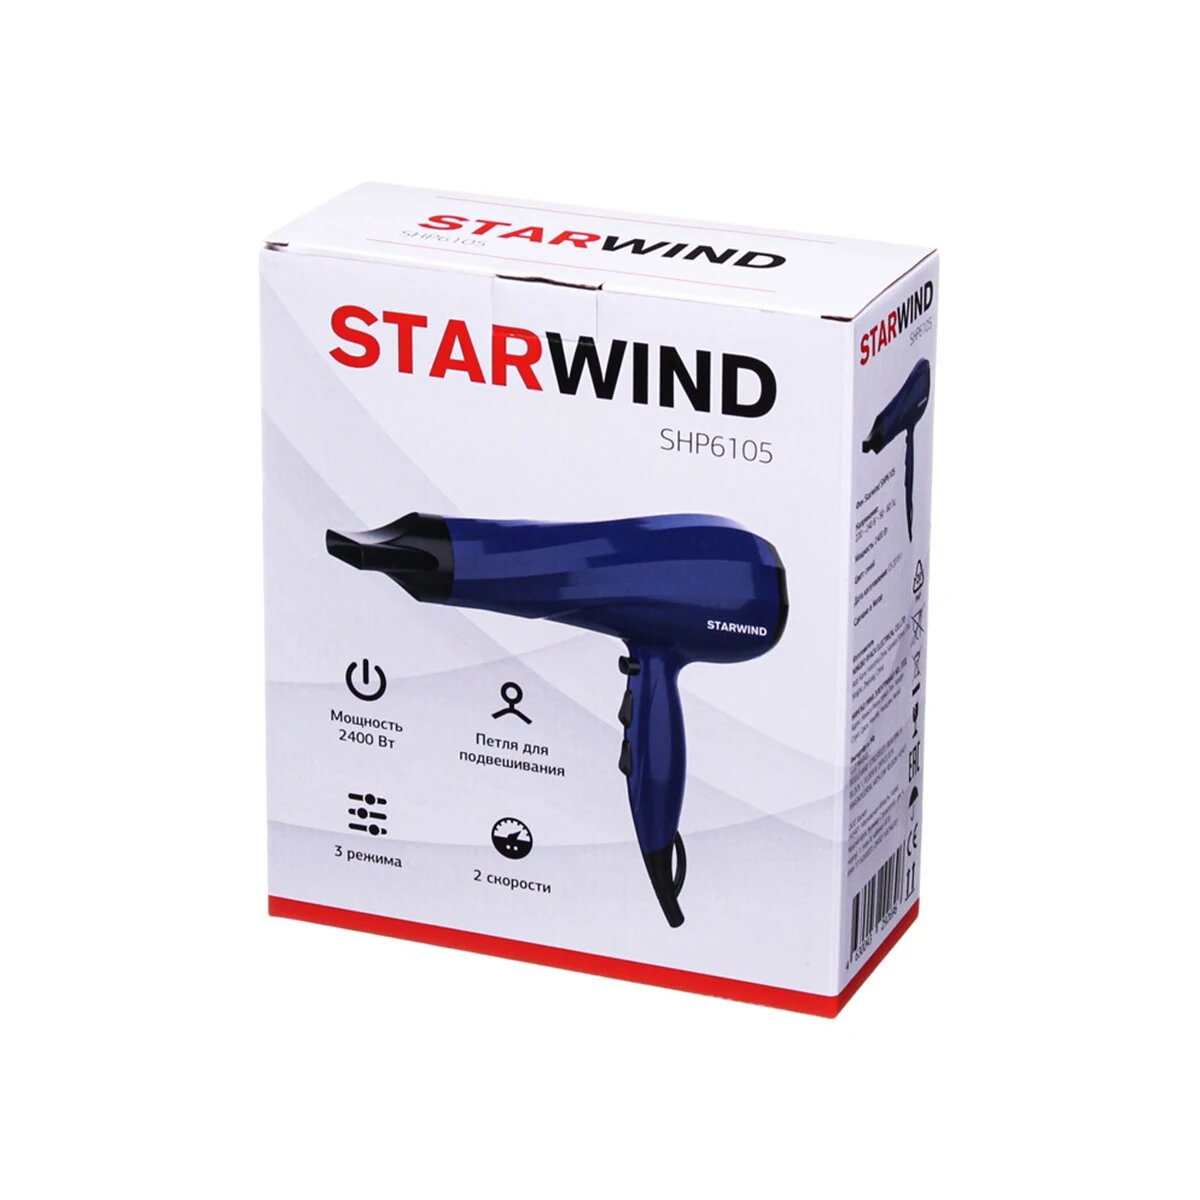 Фен Starwind 2400Вт синий - фото №14